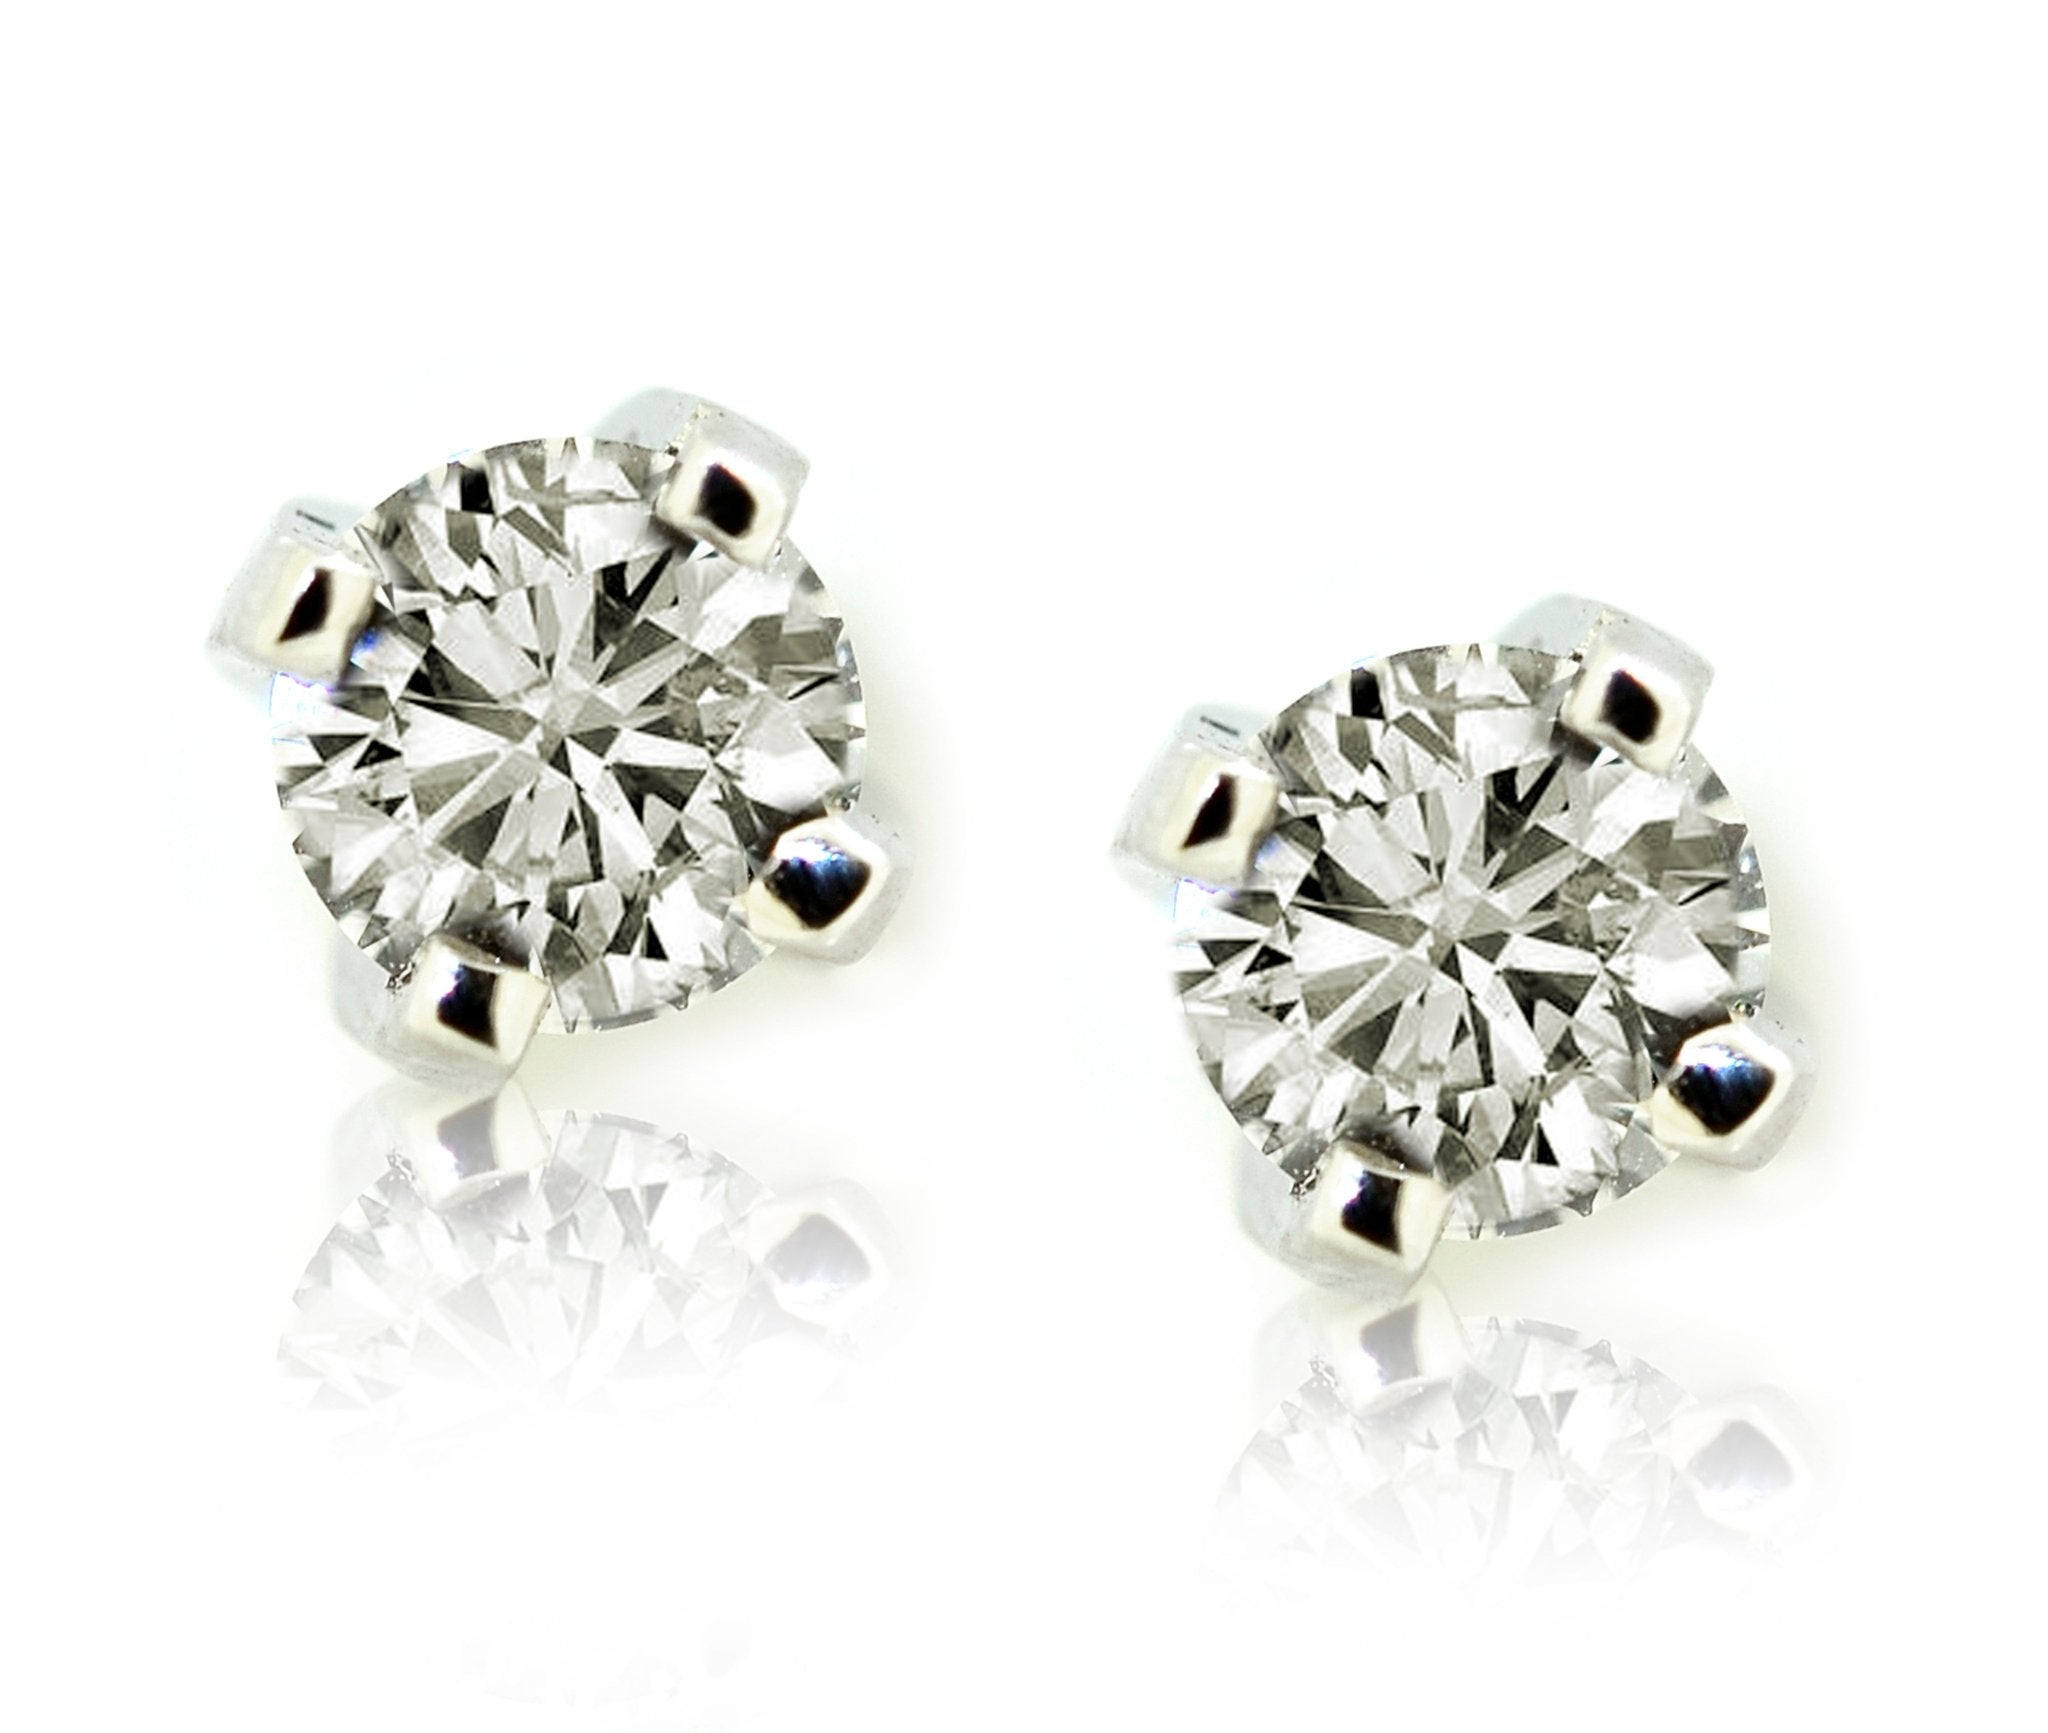 18ct White gold diamond stud earrings - ForeverJewels Design Studio 8